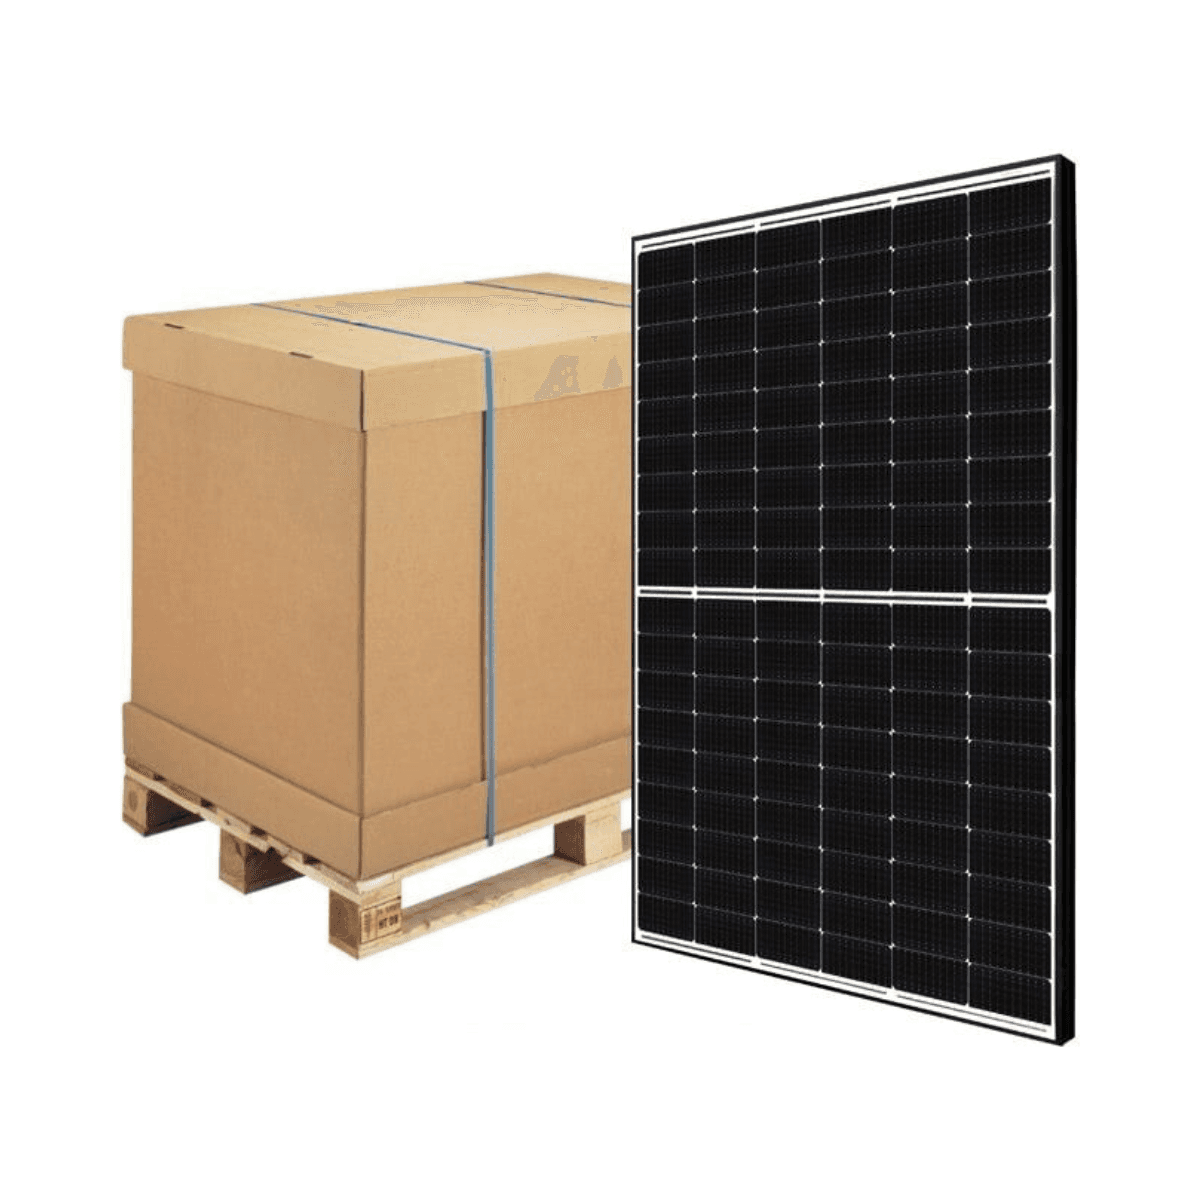 Pack 31 Solarmodul 510W Longi HI-MO5m LR5-66HPH-510M mit der Referenz LR5-66HPH 510WP von der Marke LONGI